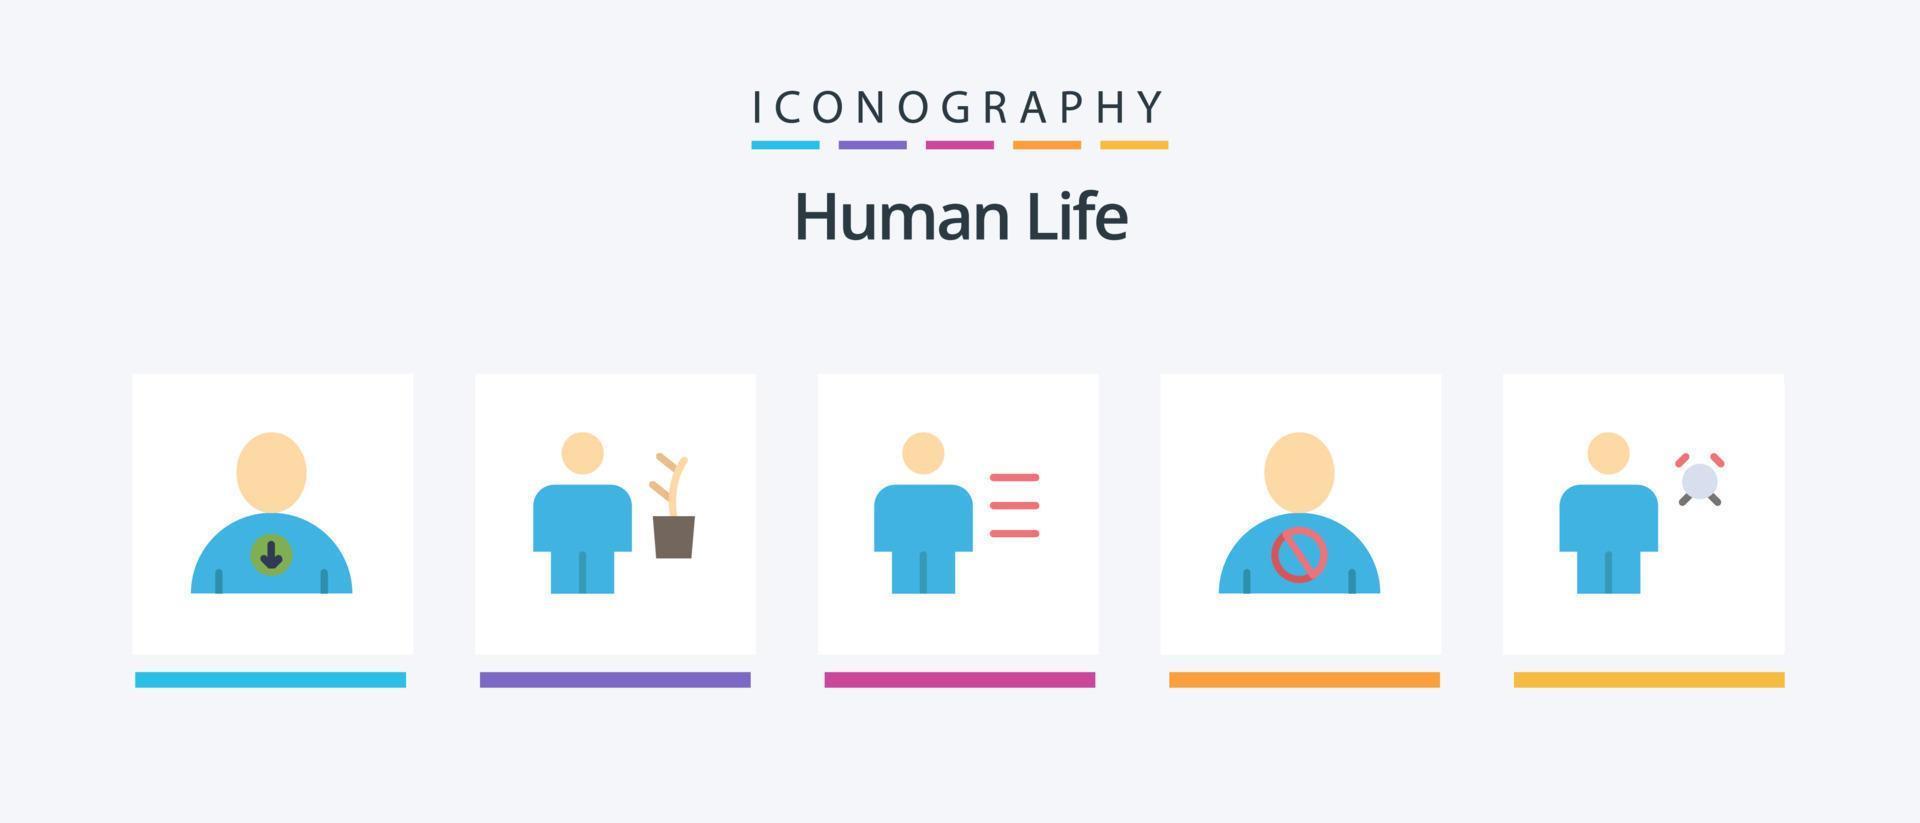 paquete de iconos de 5 planos humanos que incluye humano. cuerpo. analítica. obstruido. humano. diseño de iconos creativos vector